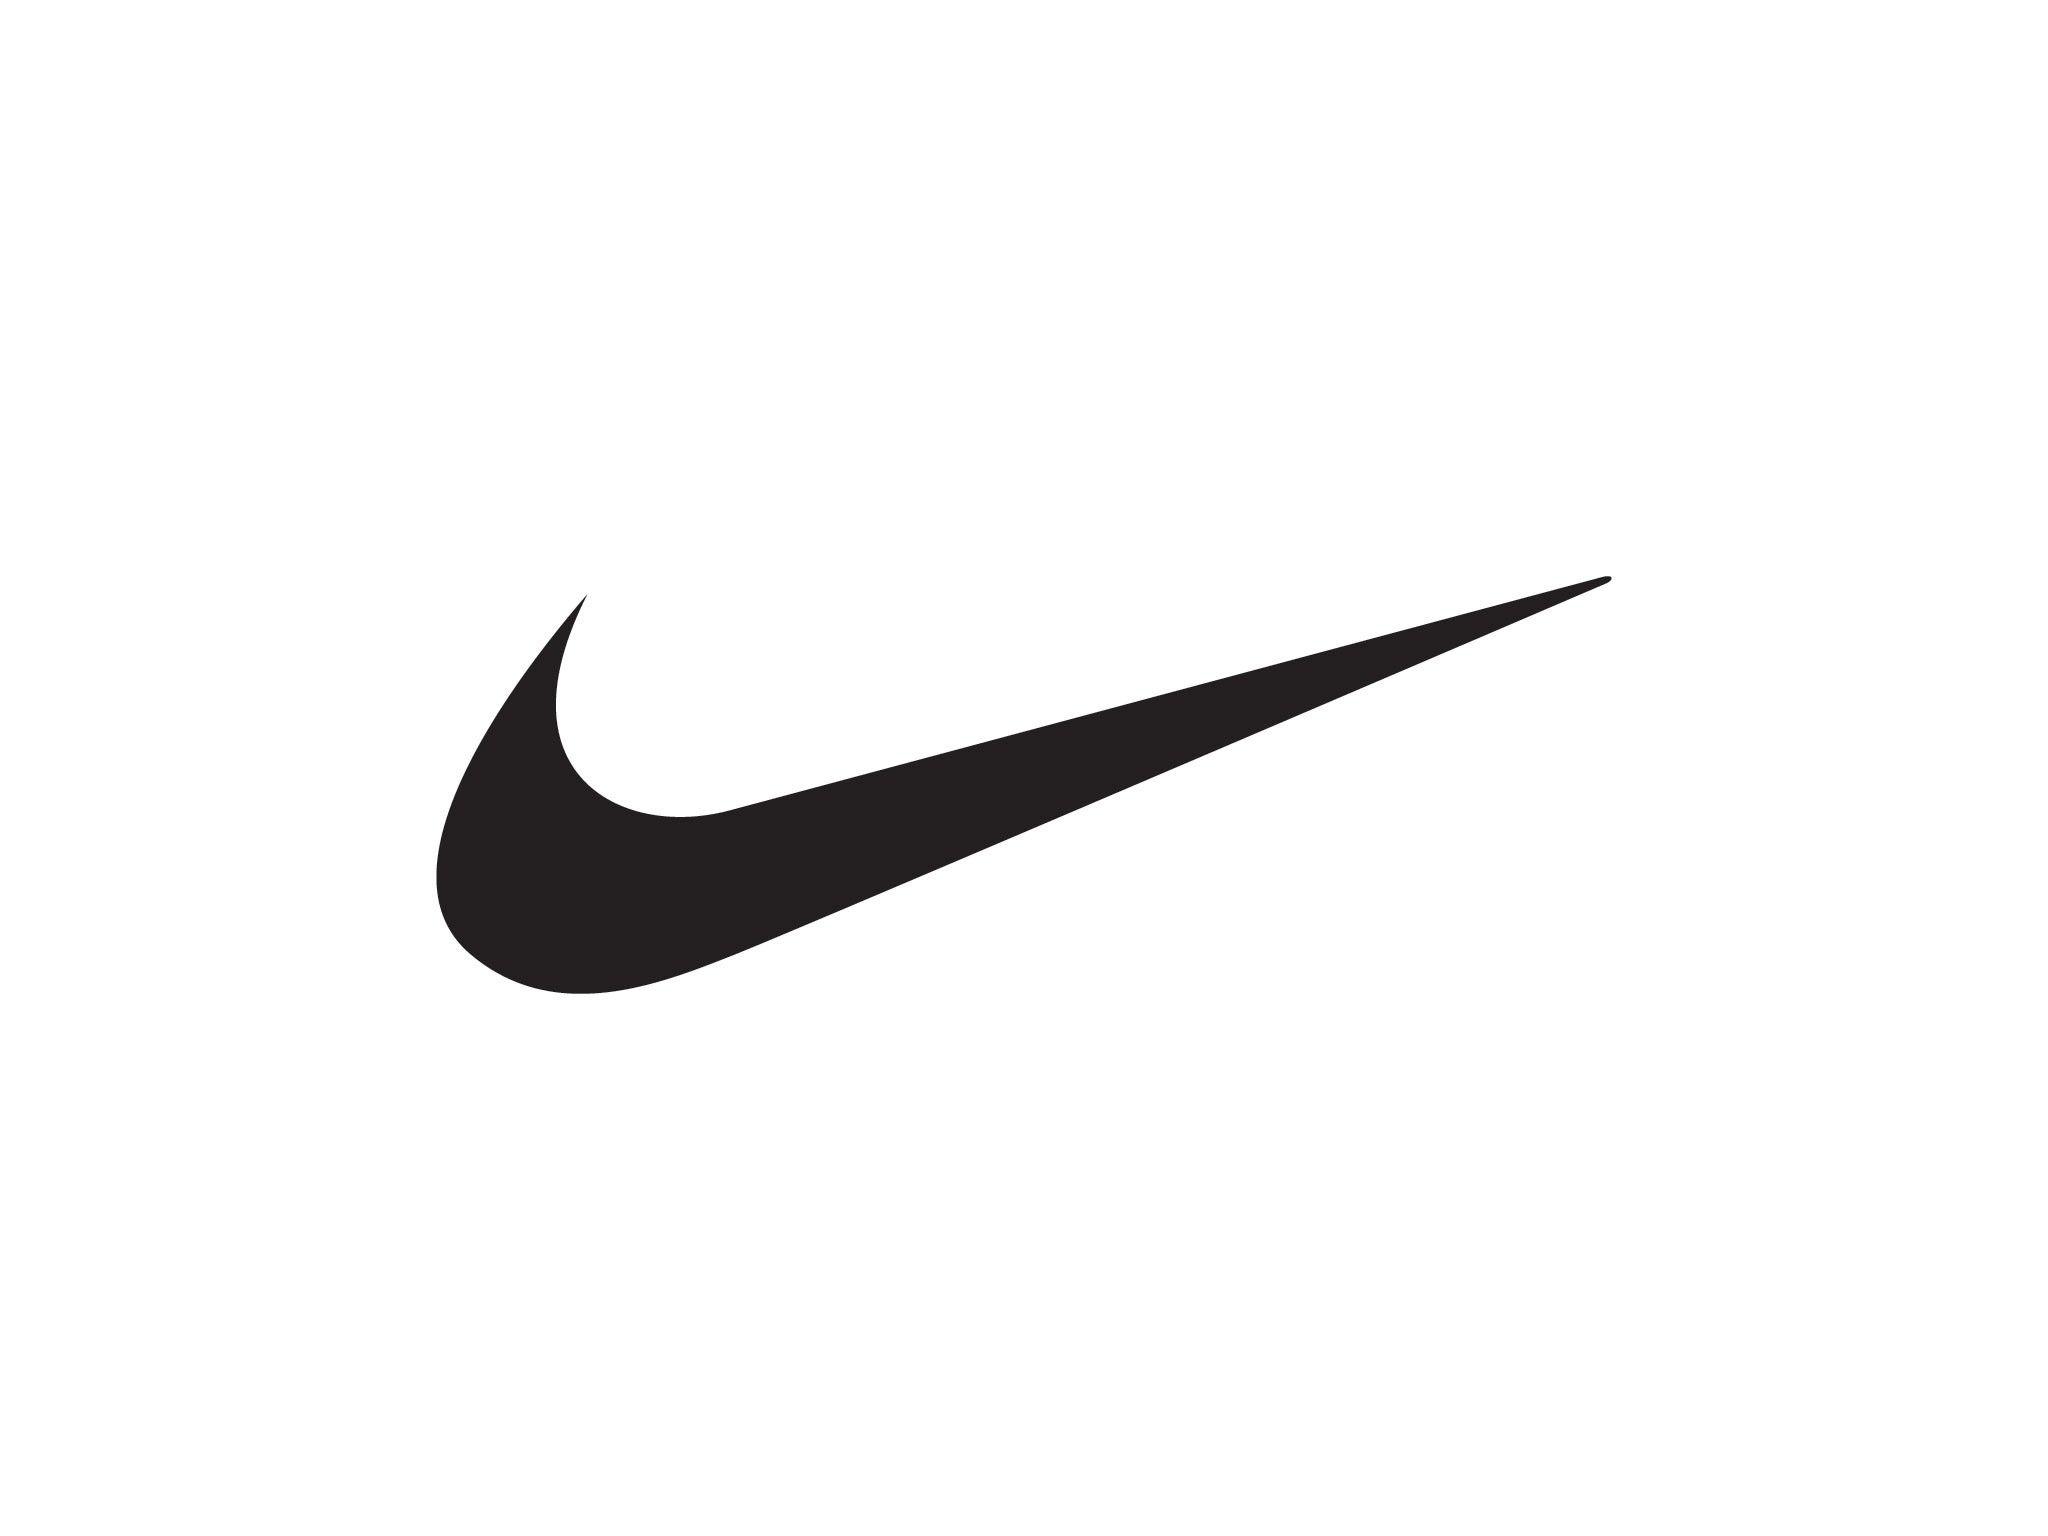 Red Nike Swoosh Logo - Nike Logo Vector Image Nike Swoosh Logo, Nike Logo and Red